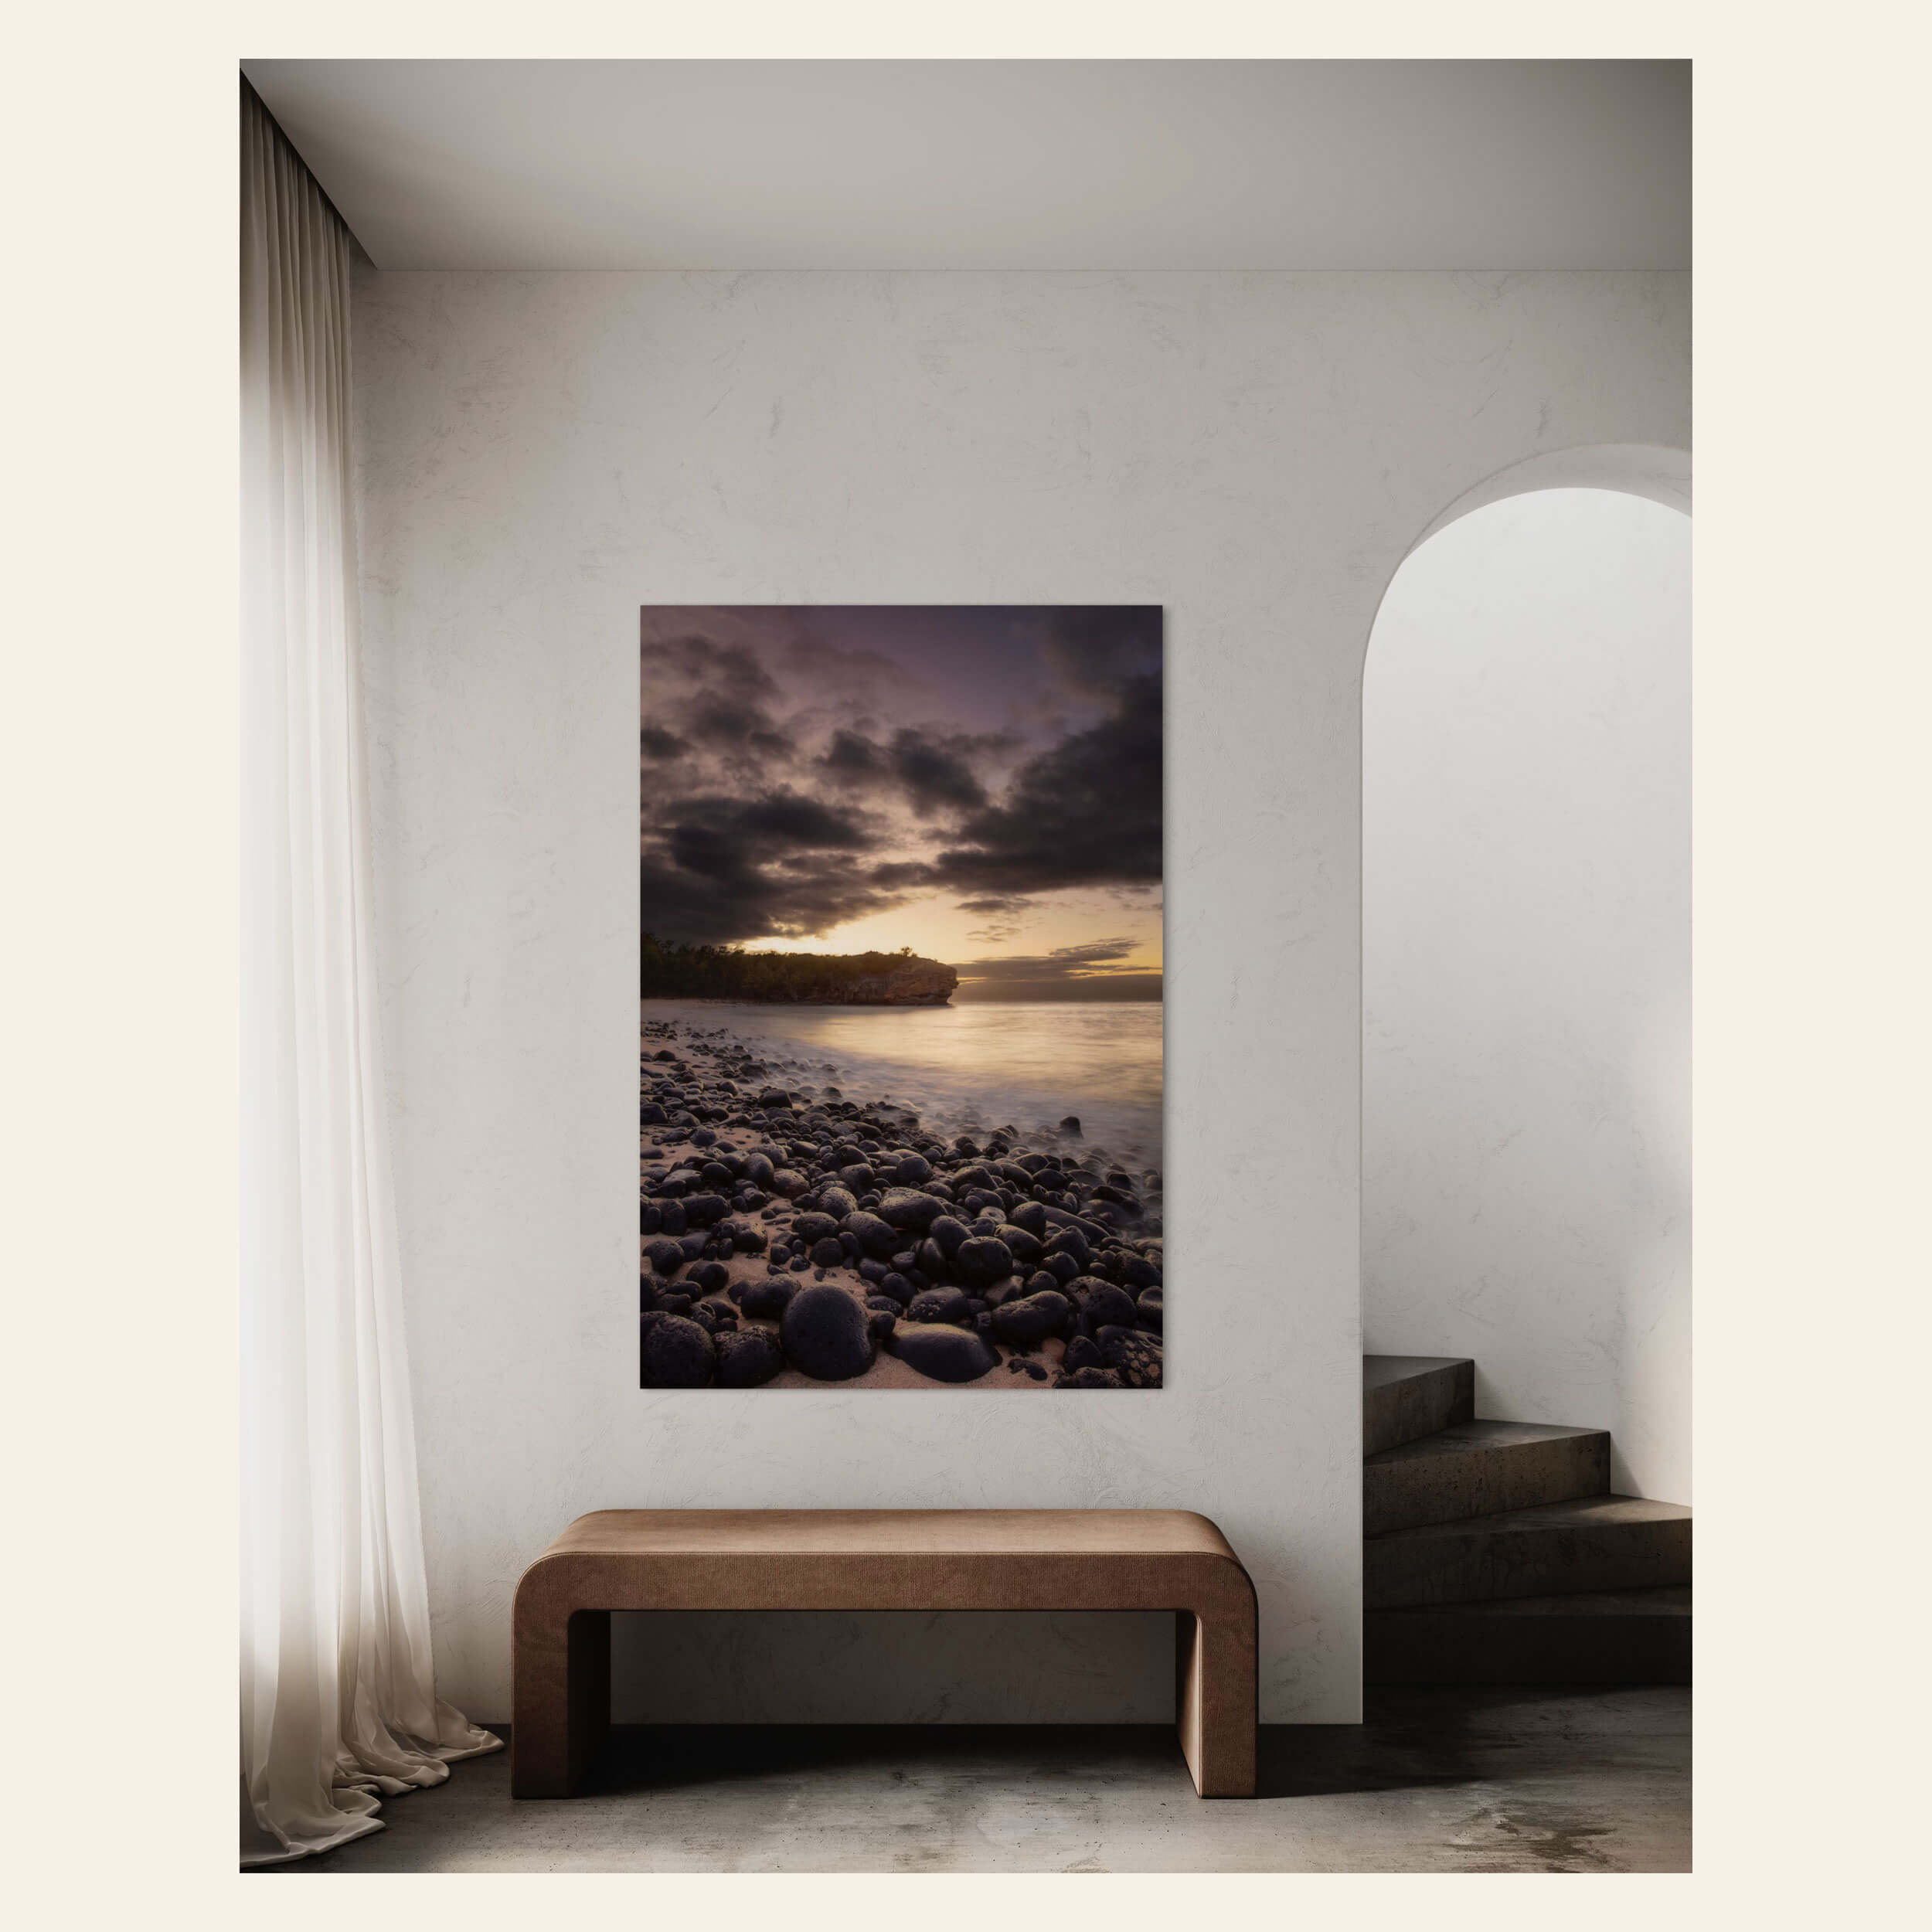 A Shipwreck Beach sunrise picture from Poipu, Kauai, hangs in a hallway.